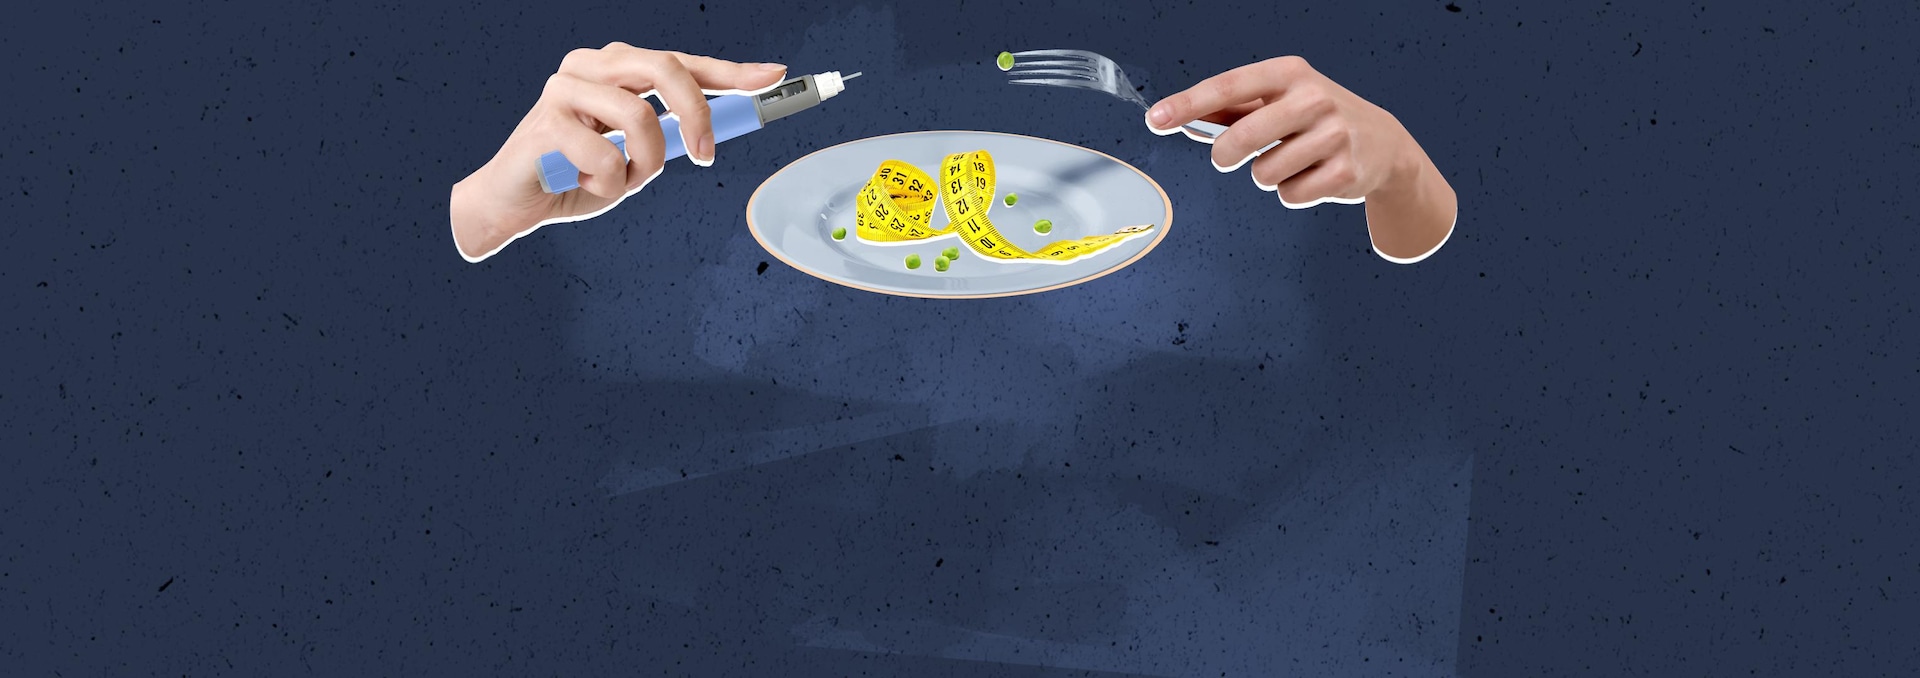 Illustration : deux mains au dessus d'une assiette ayant comme contenu un ruban à mesurer et quelques petits pois verts ; la main gauche porte un stylo ozempic et la main droite, une fourchette